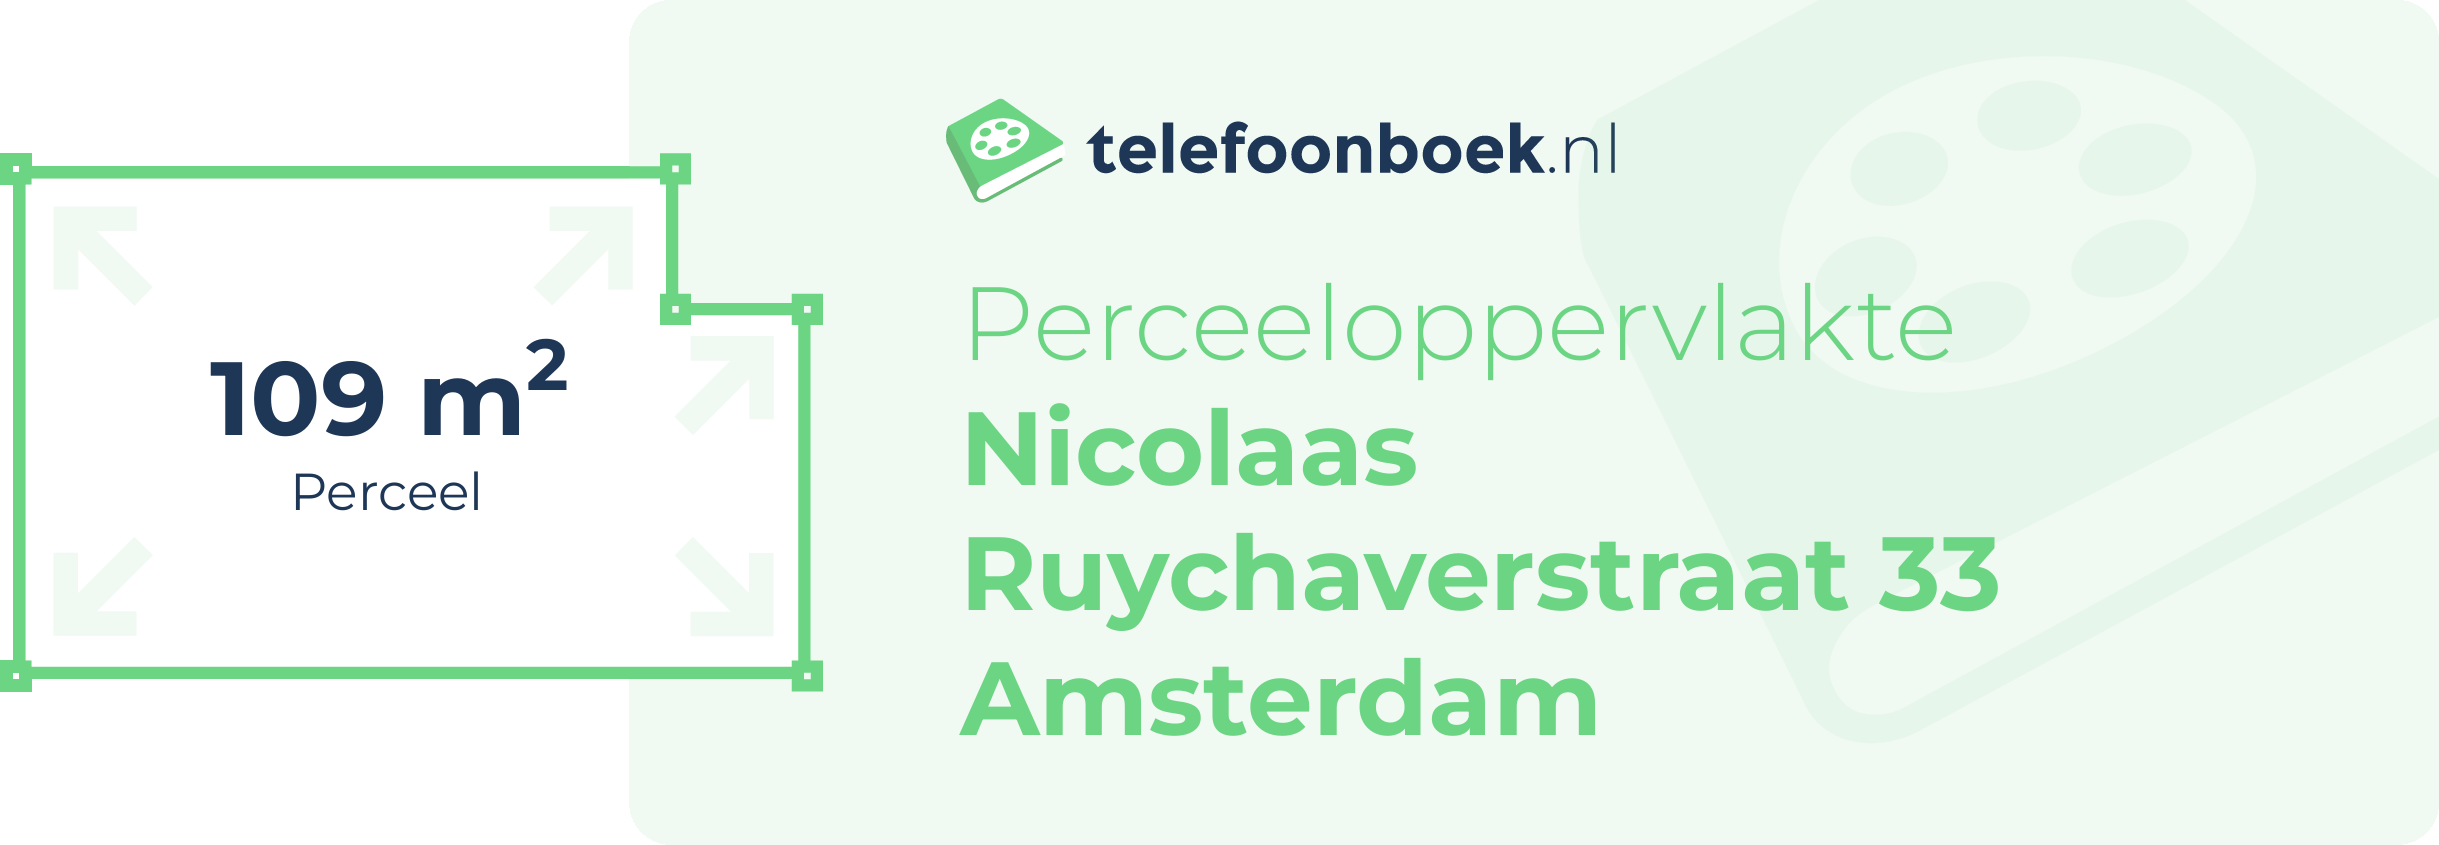 Perceeloppervlakte Nicolaas Ruychaverstraat 33 Amsterdam